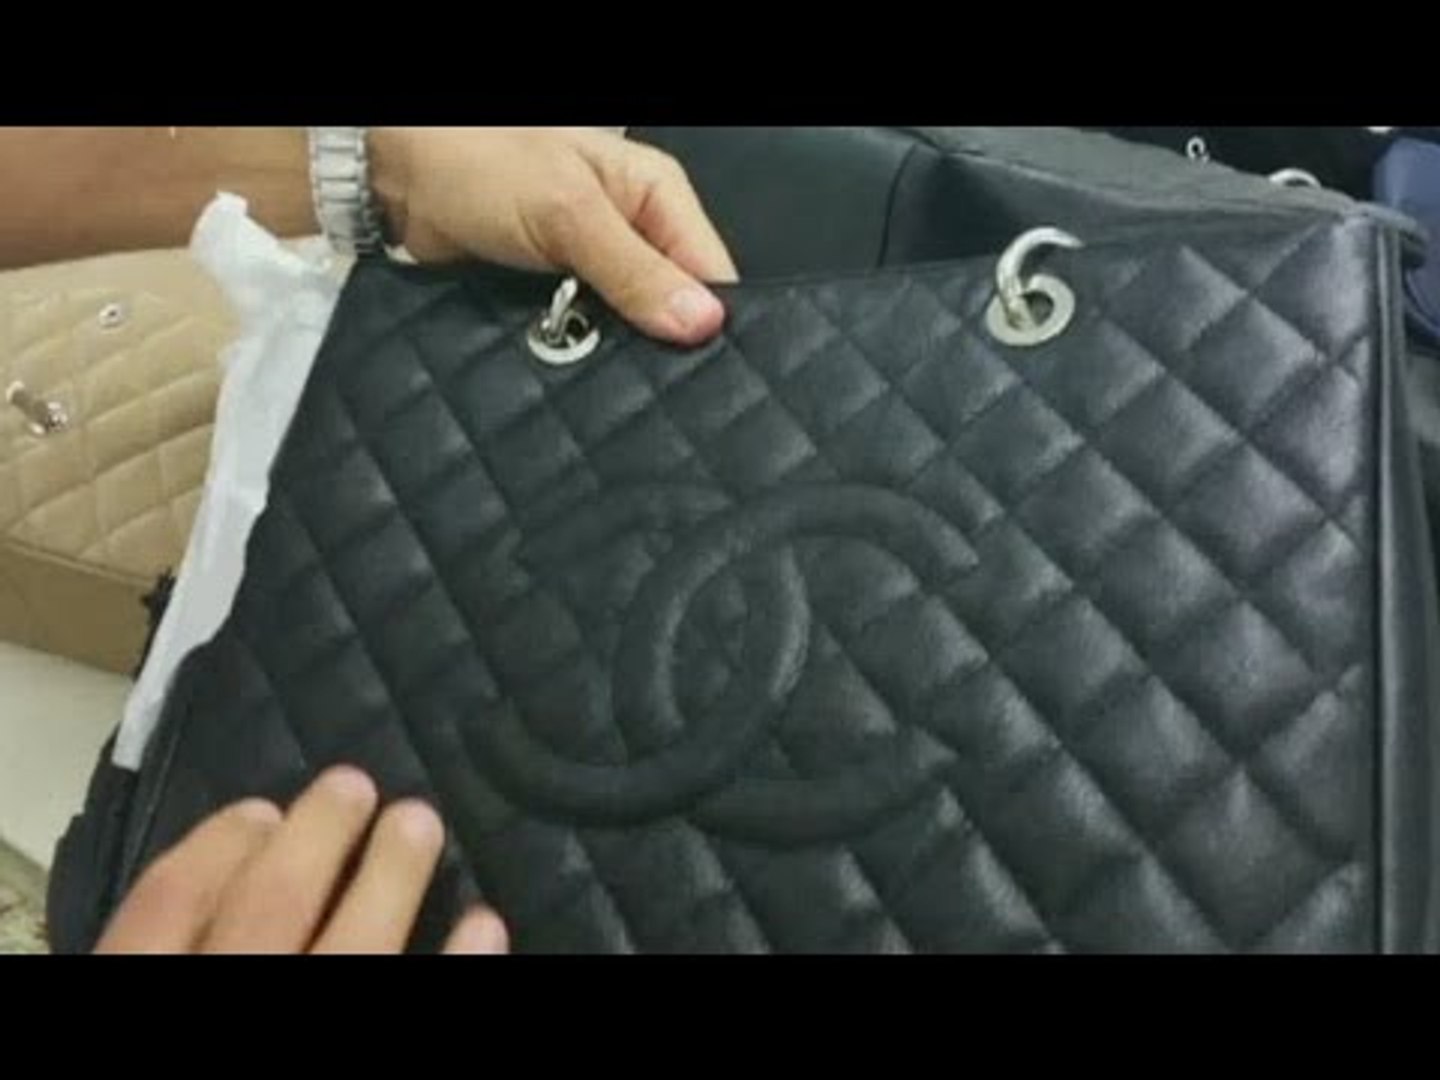 Napoli - Borse di Chanel contraffatte, sequestrata fabbrica in pieno centro  (22.02.16) - Video Dailymotion